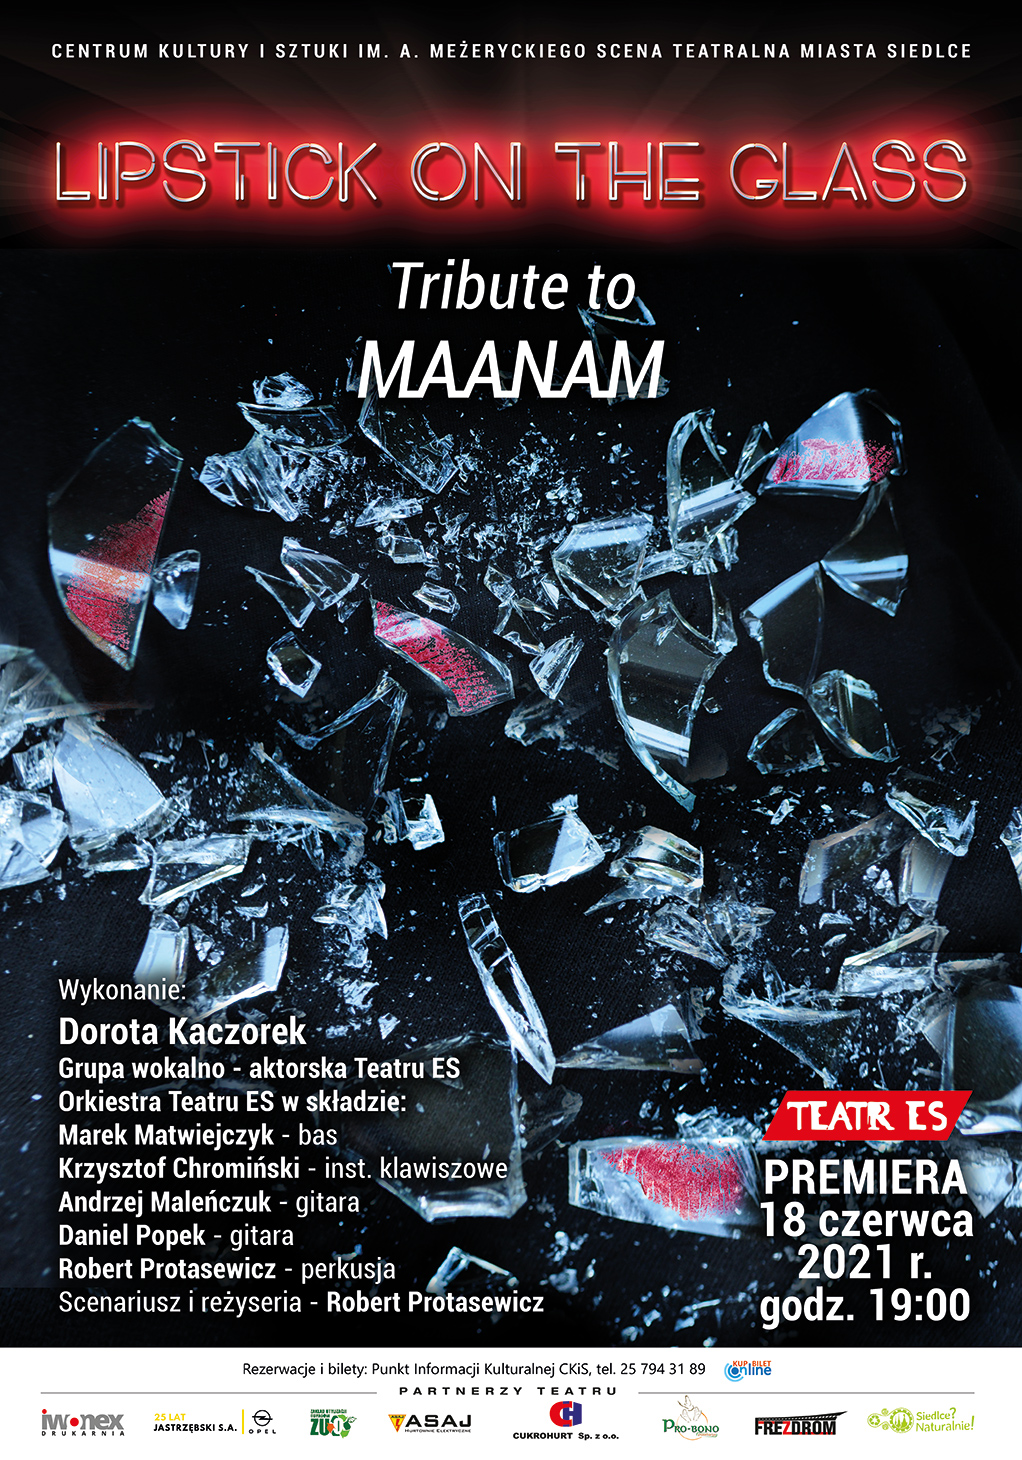 Premiera widowiska "Lipstick on the glass - Tribute to Maanam" już 18 czerwca!